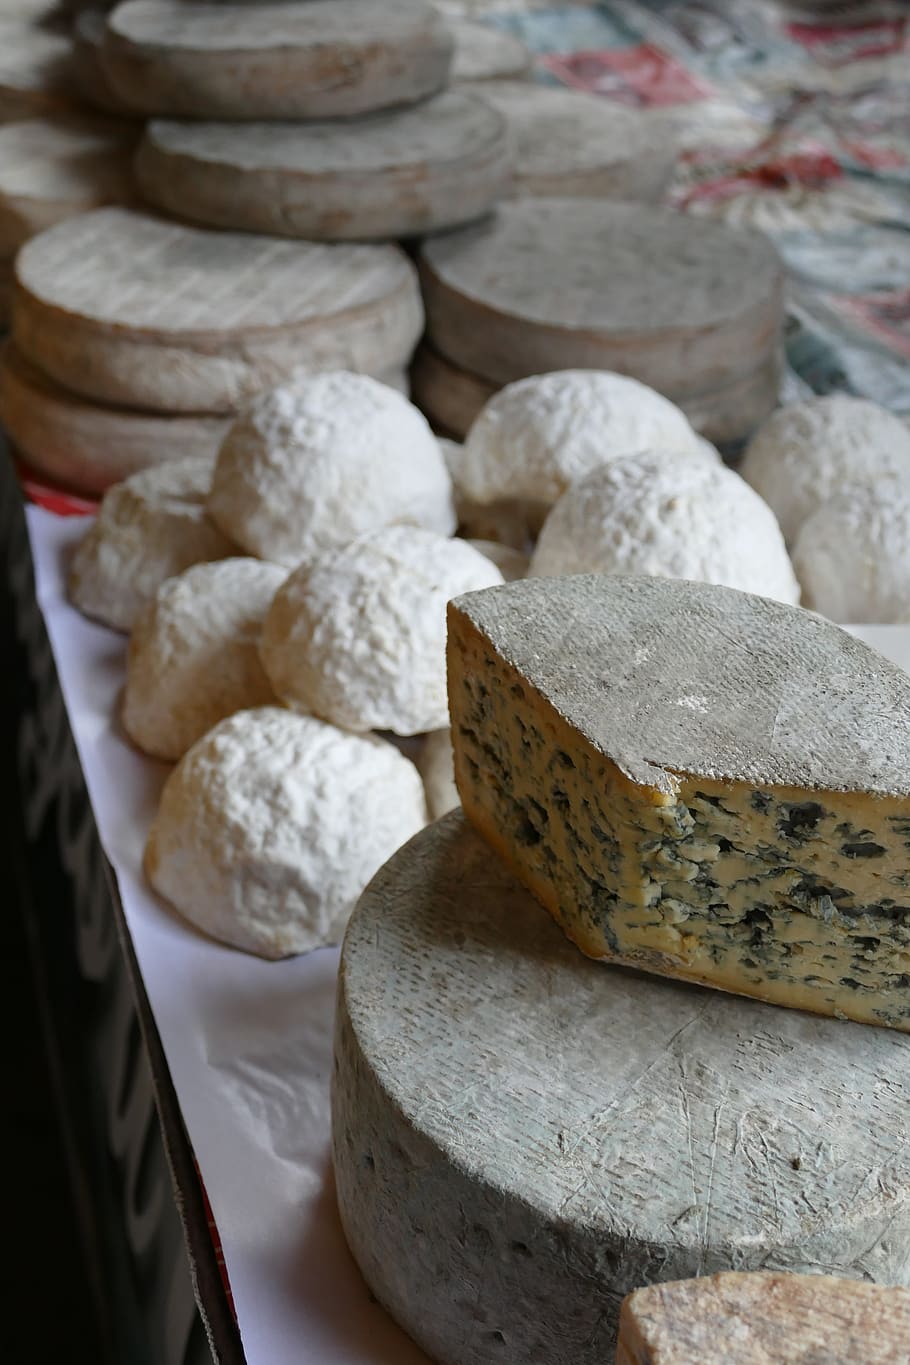 Saps quin és el formatge blau més untuós i amb l'aroma més irresistible?